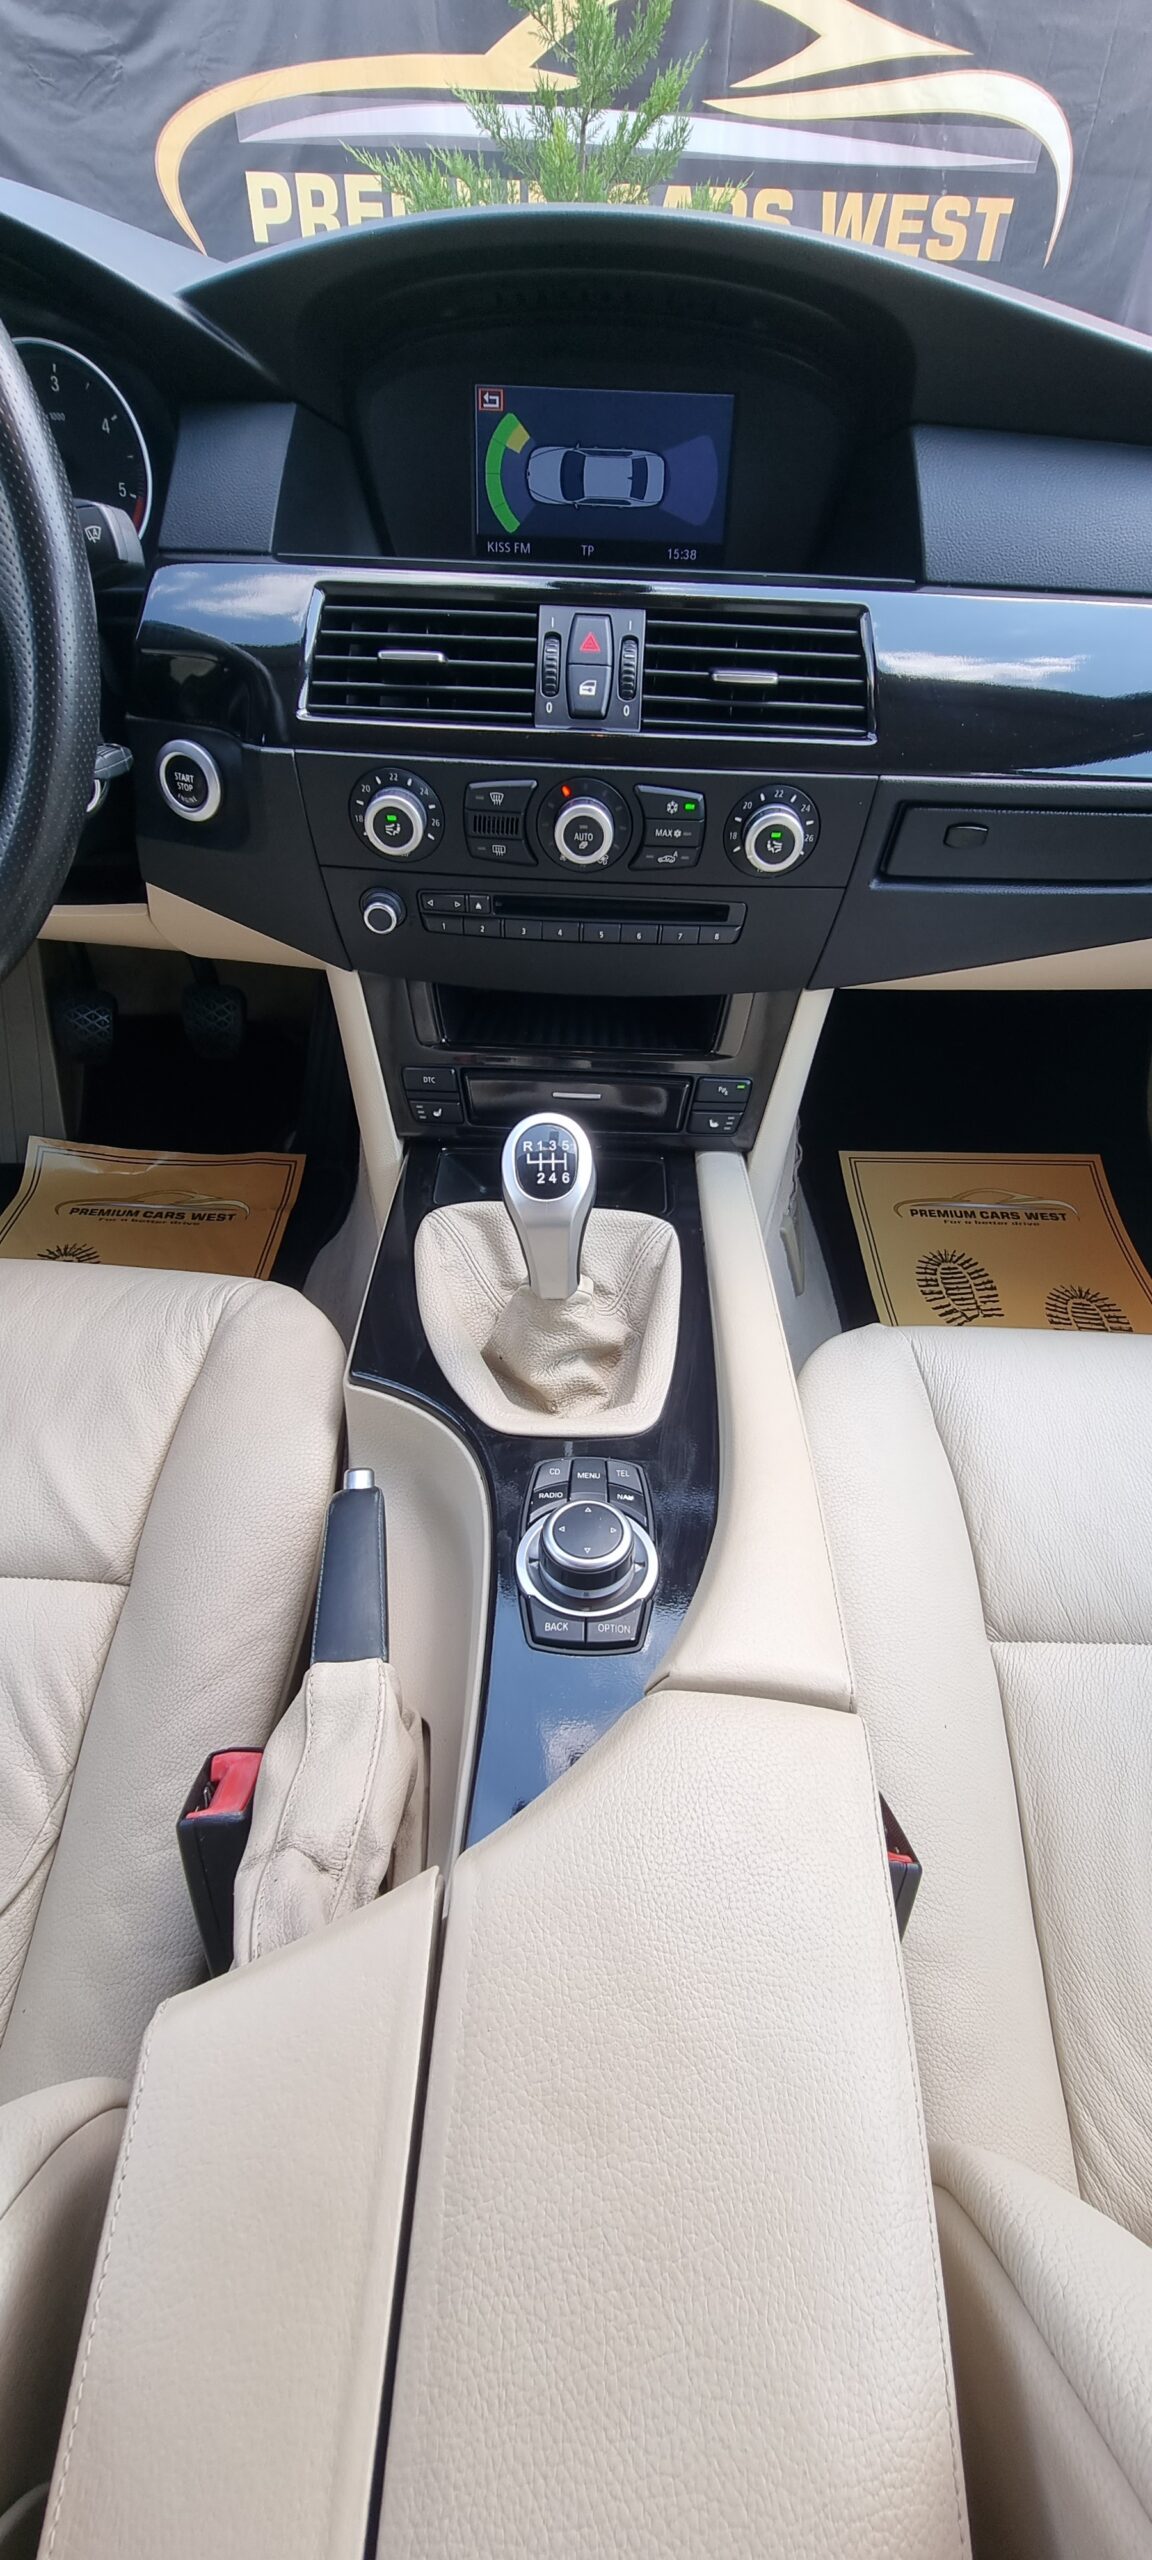 BMW SERIA 5 E60, 2.0 DIESEL, 163 CP, EURO 5, AN 2009